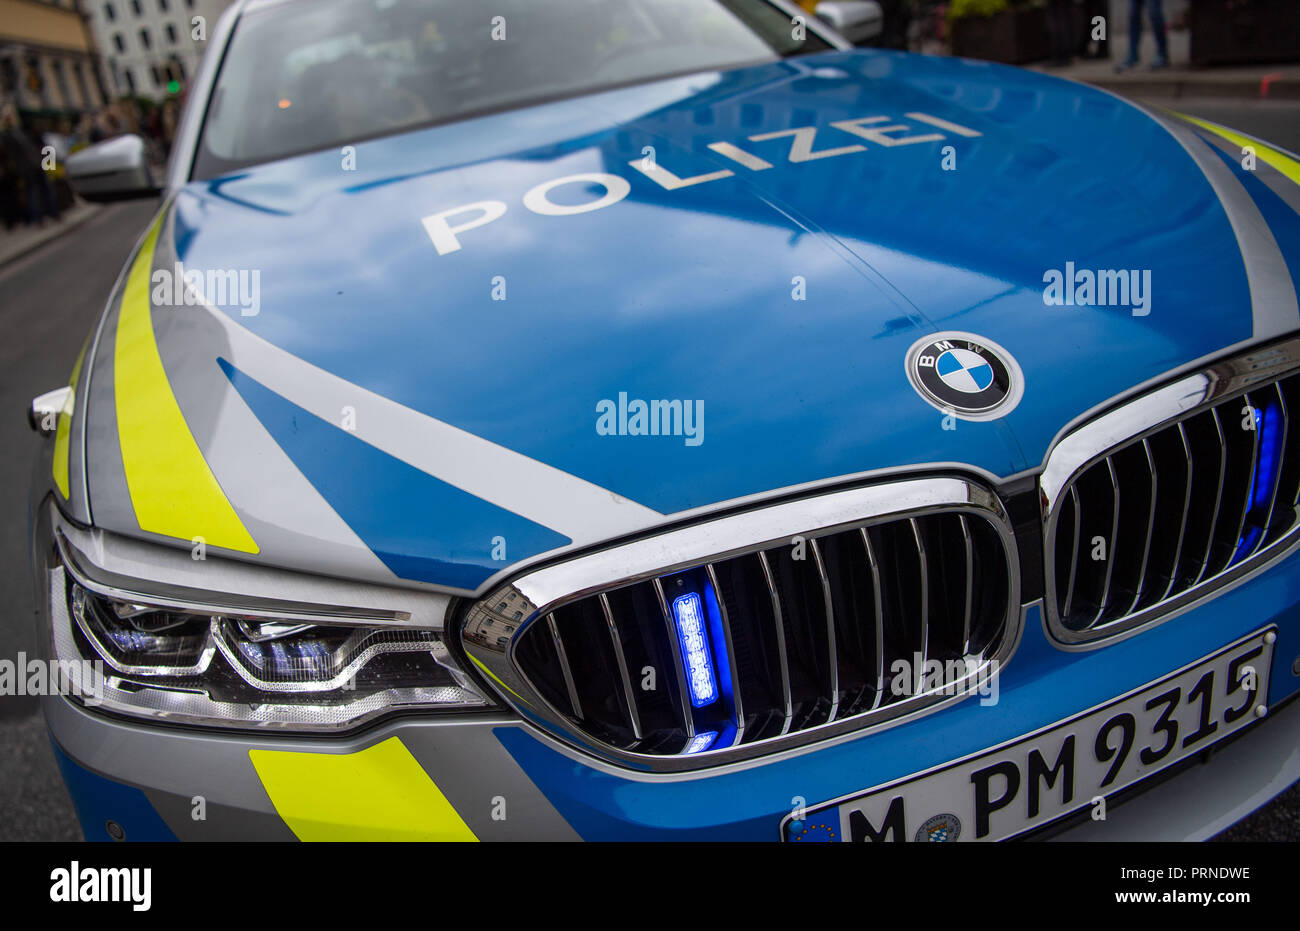 03 ottobre 2018, Baviera Monaco di Baviera: le parole 'Polizia' può essere visto su una macchina della polizia in corrispondenza di un bordo di una dimostrazione. Foto: Lino Mirgeler/dpa Foto Stock